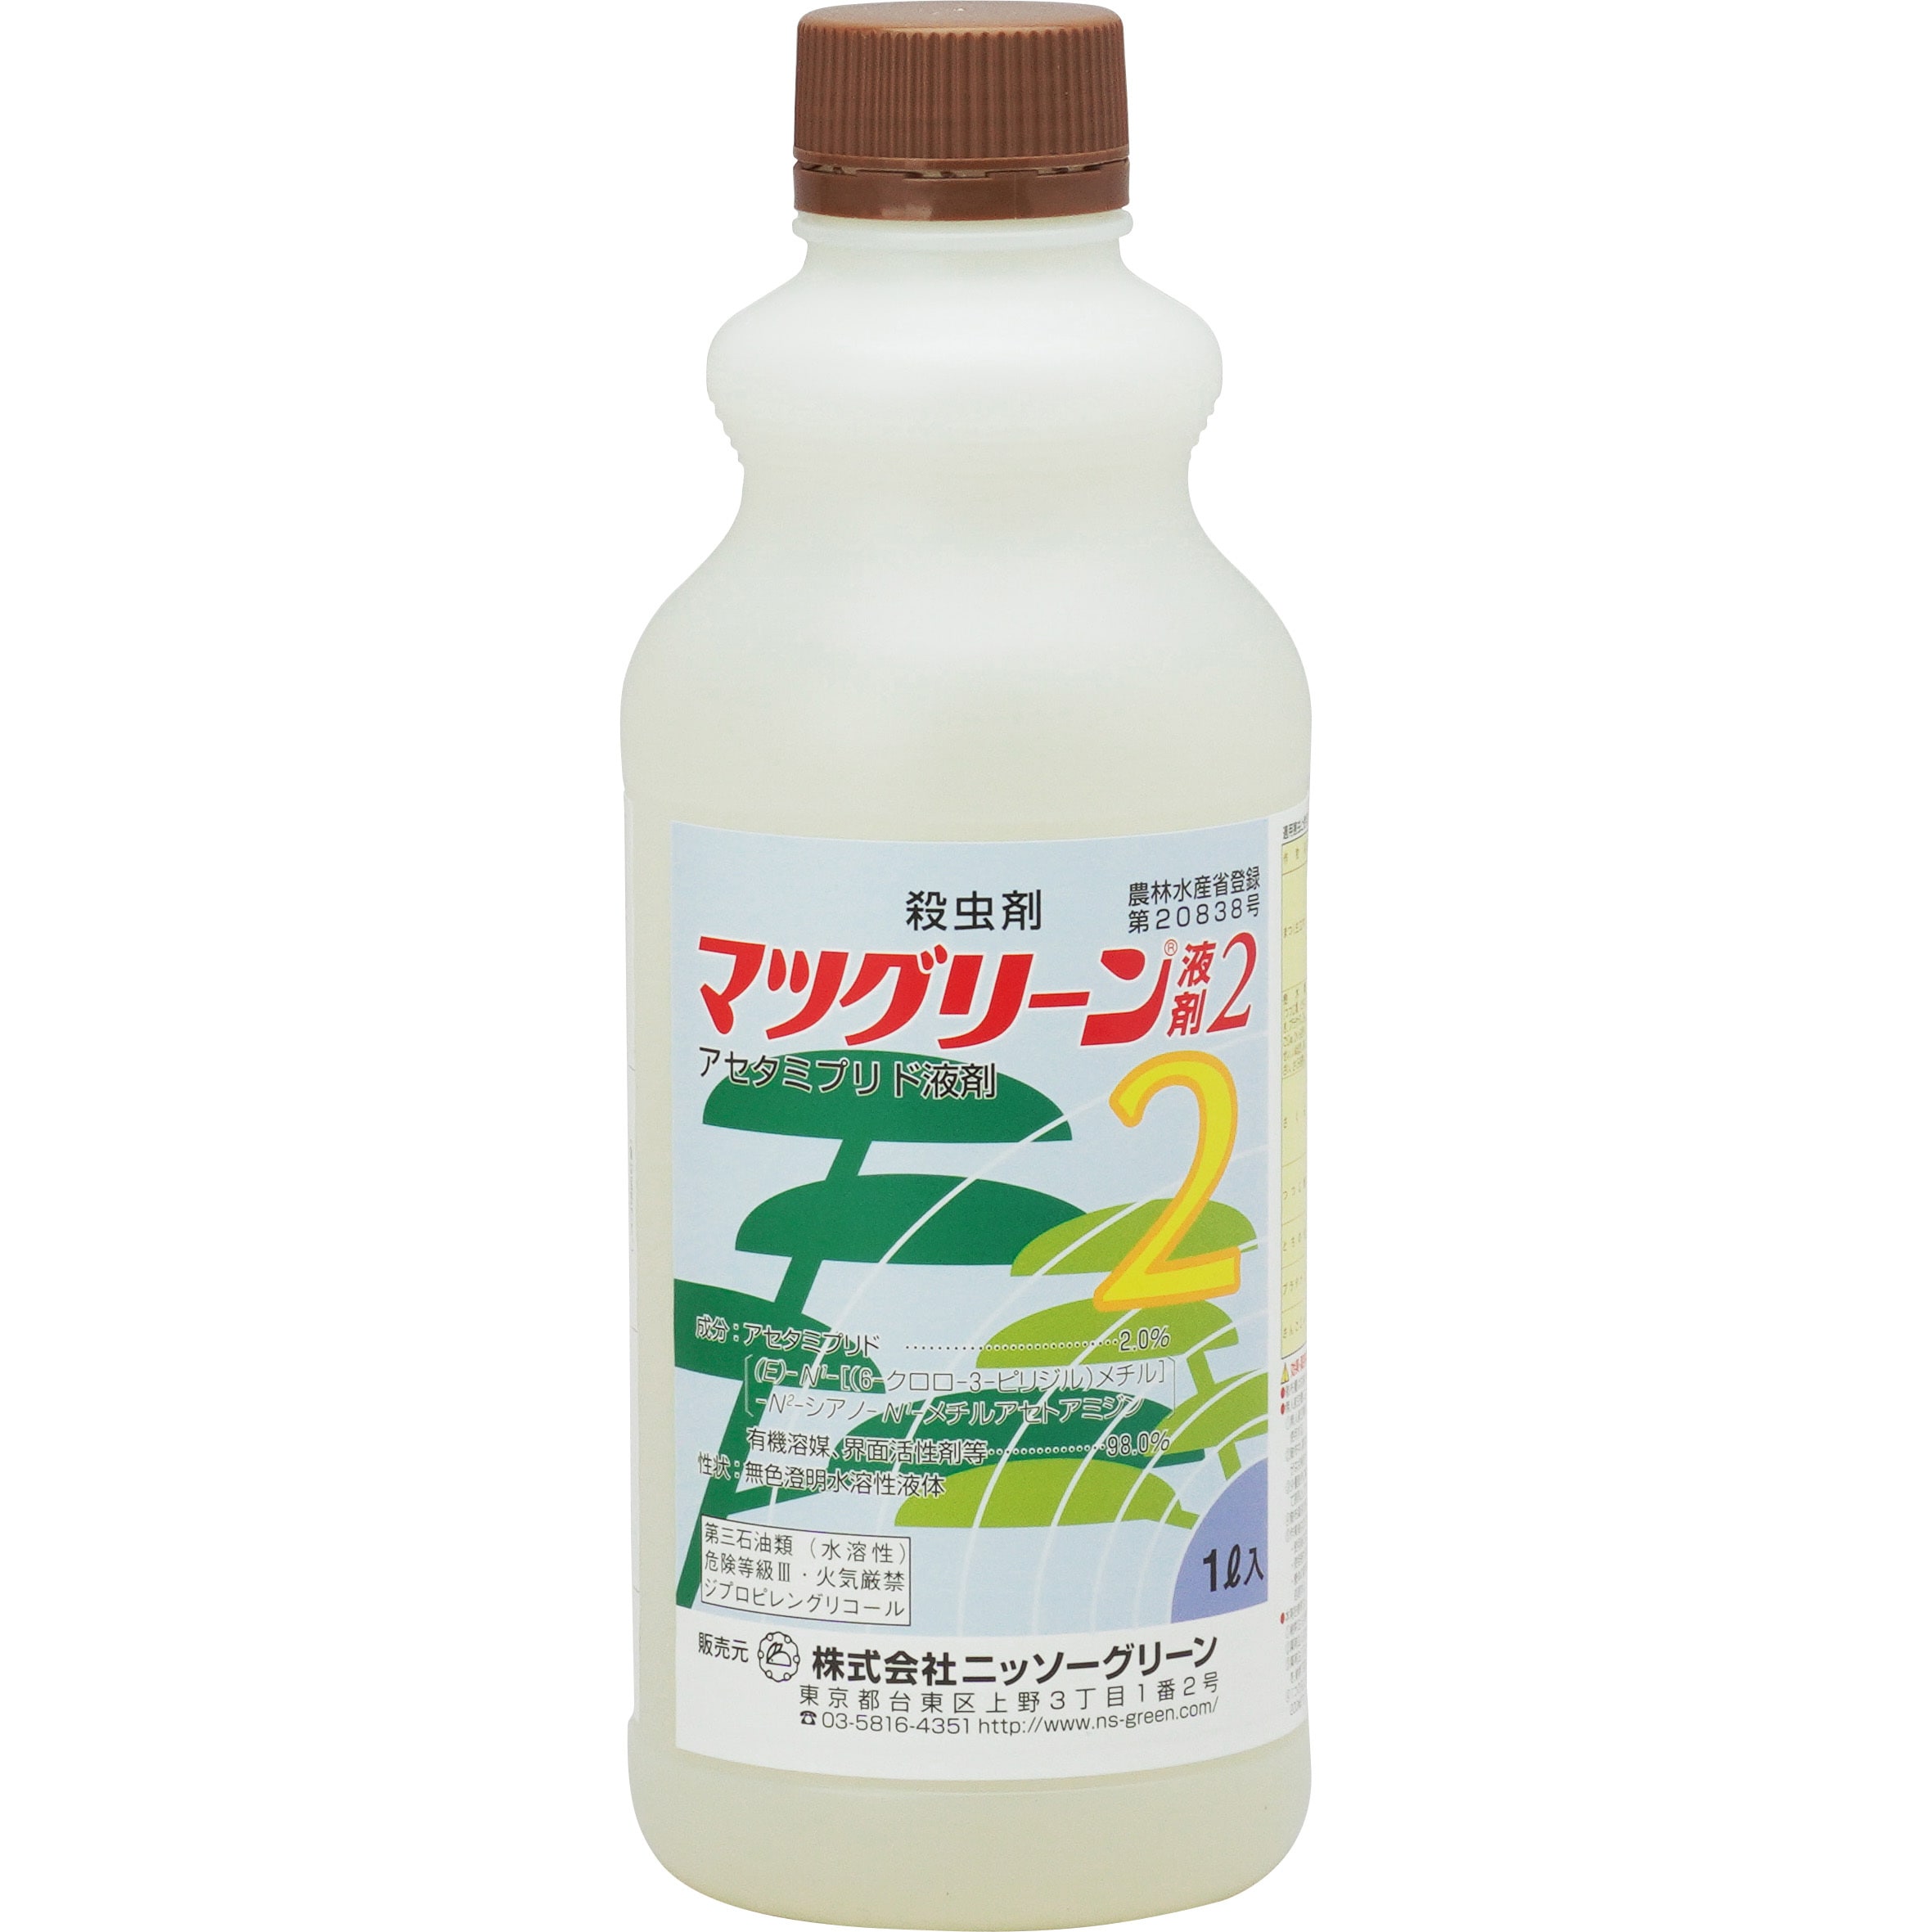 マツグリーン2液剤 1本(1L) ニッソーグリーン 【通販サイトMonotaRO】